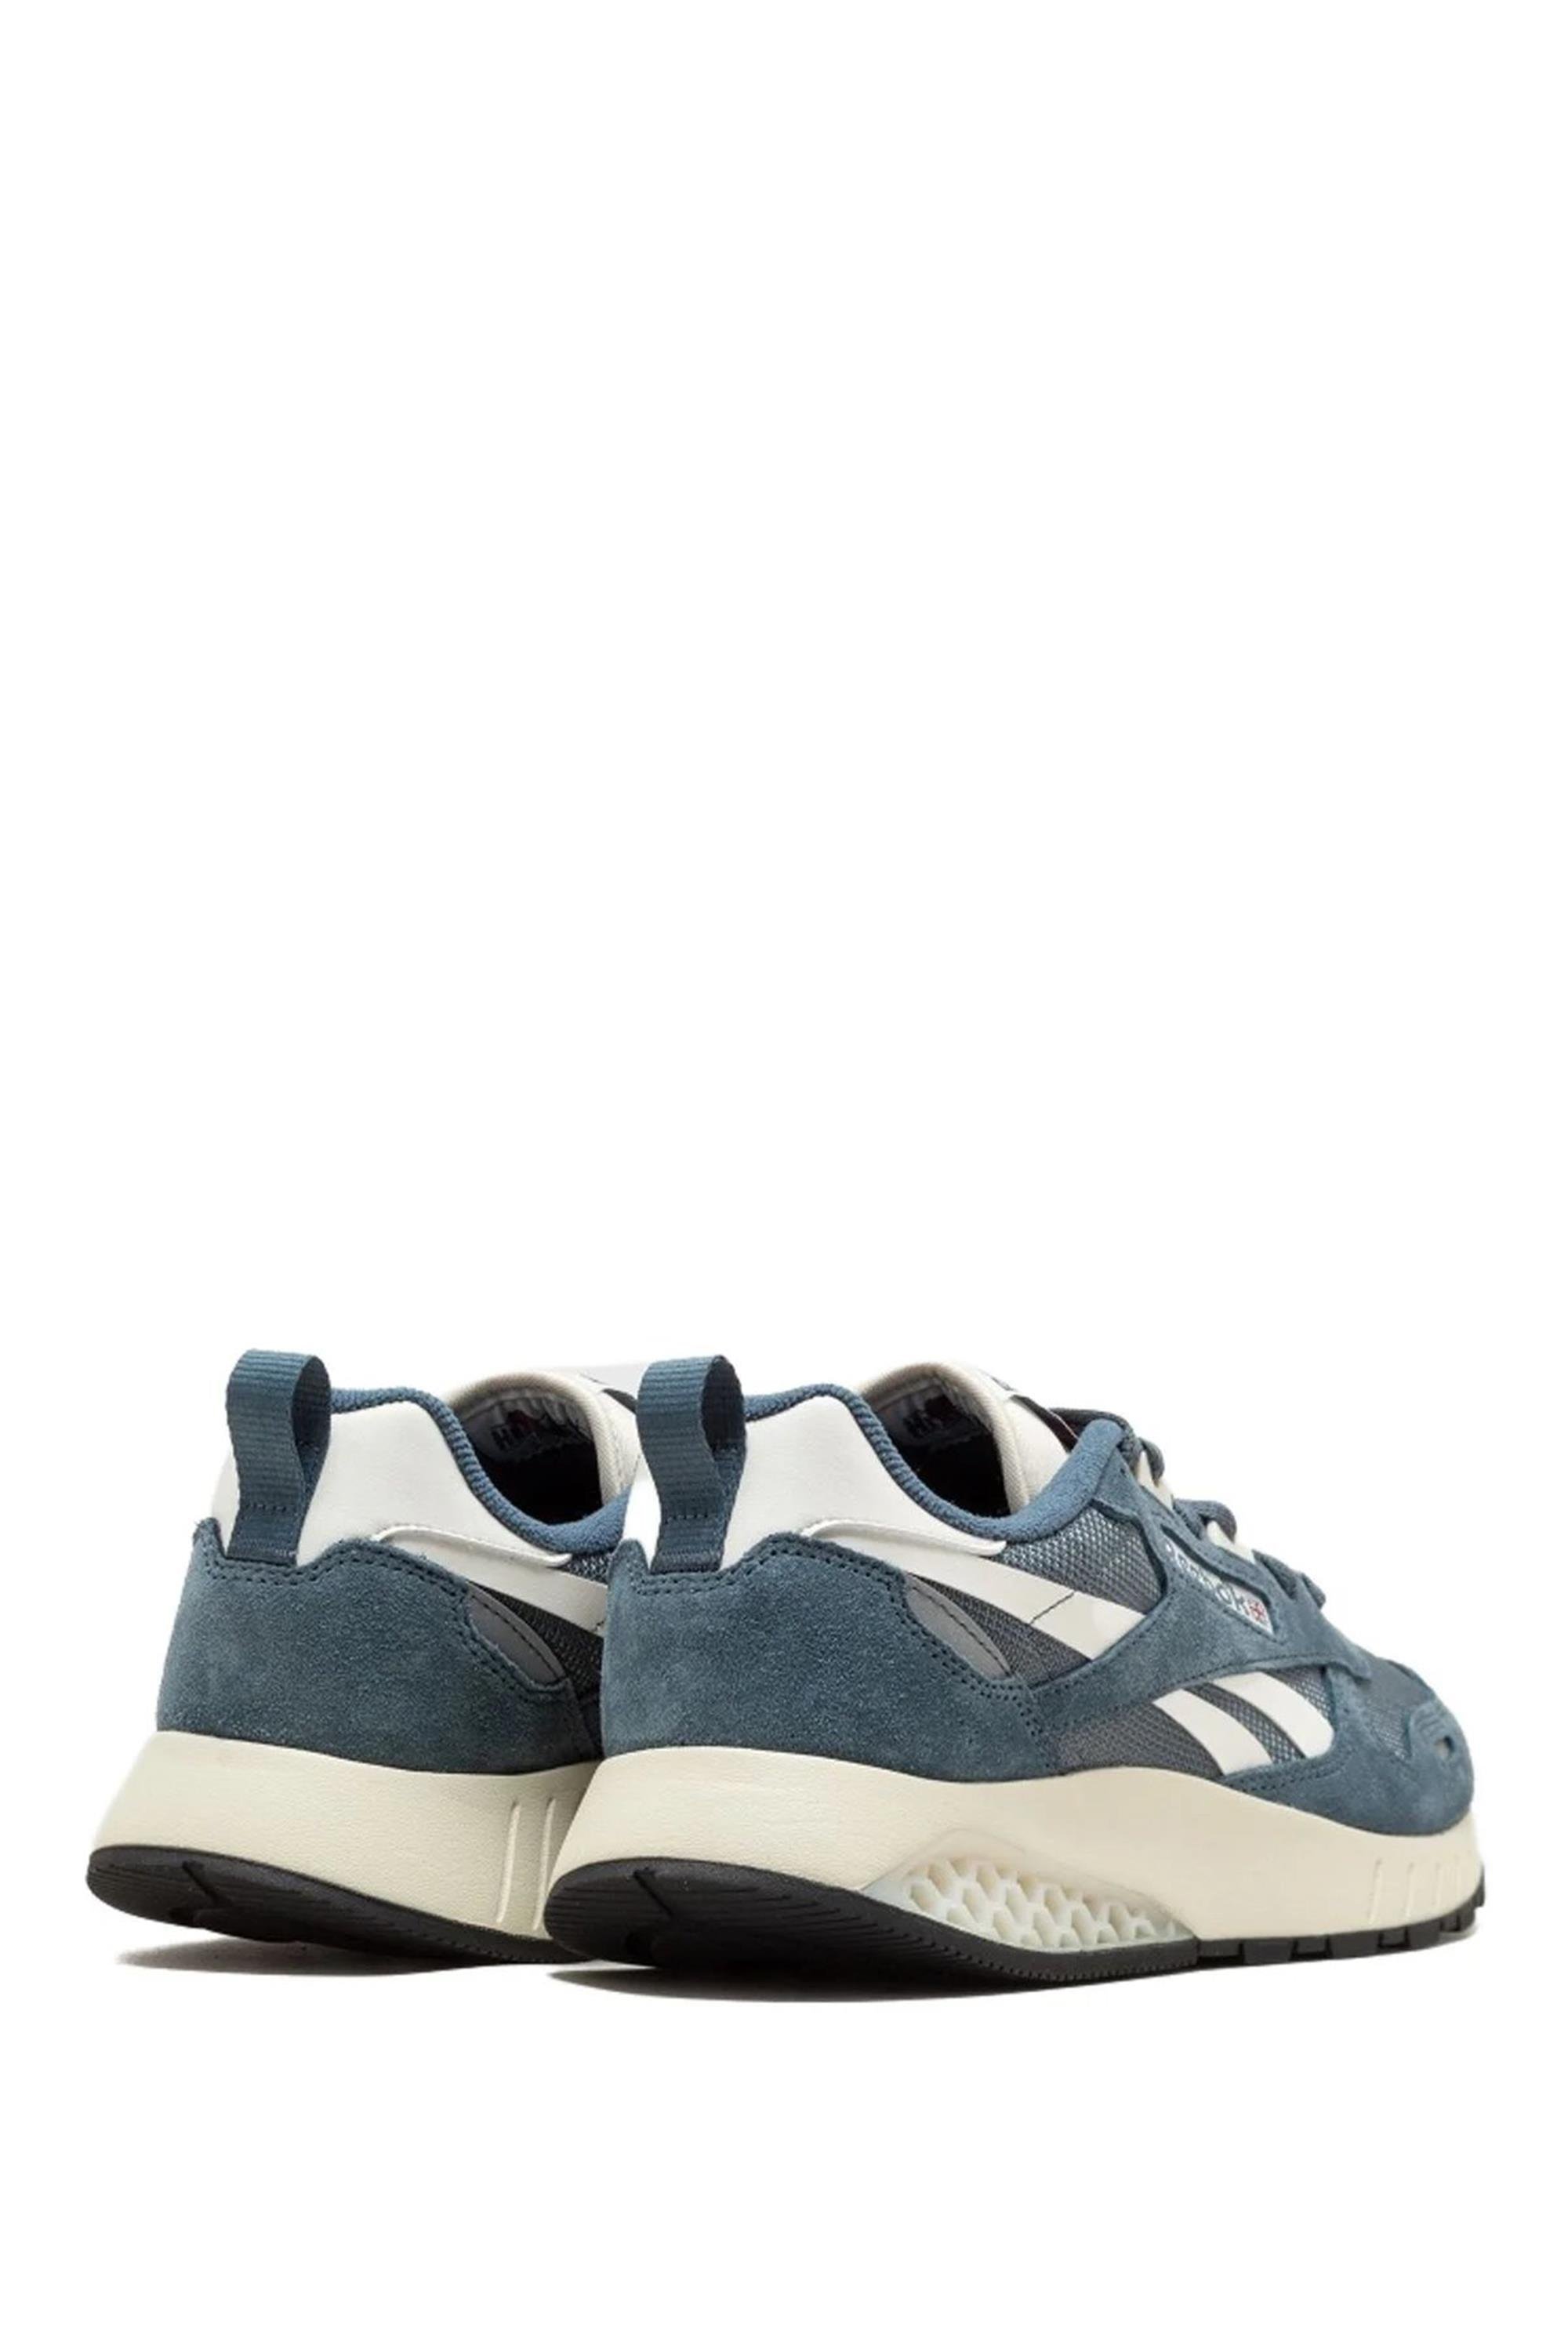 Reebok 101558427 Mavi Unisex Yetişkin Cl Leather Hexalıte Sneaker Ayakkabı